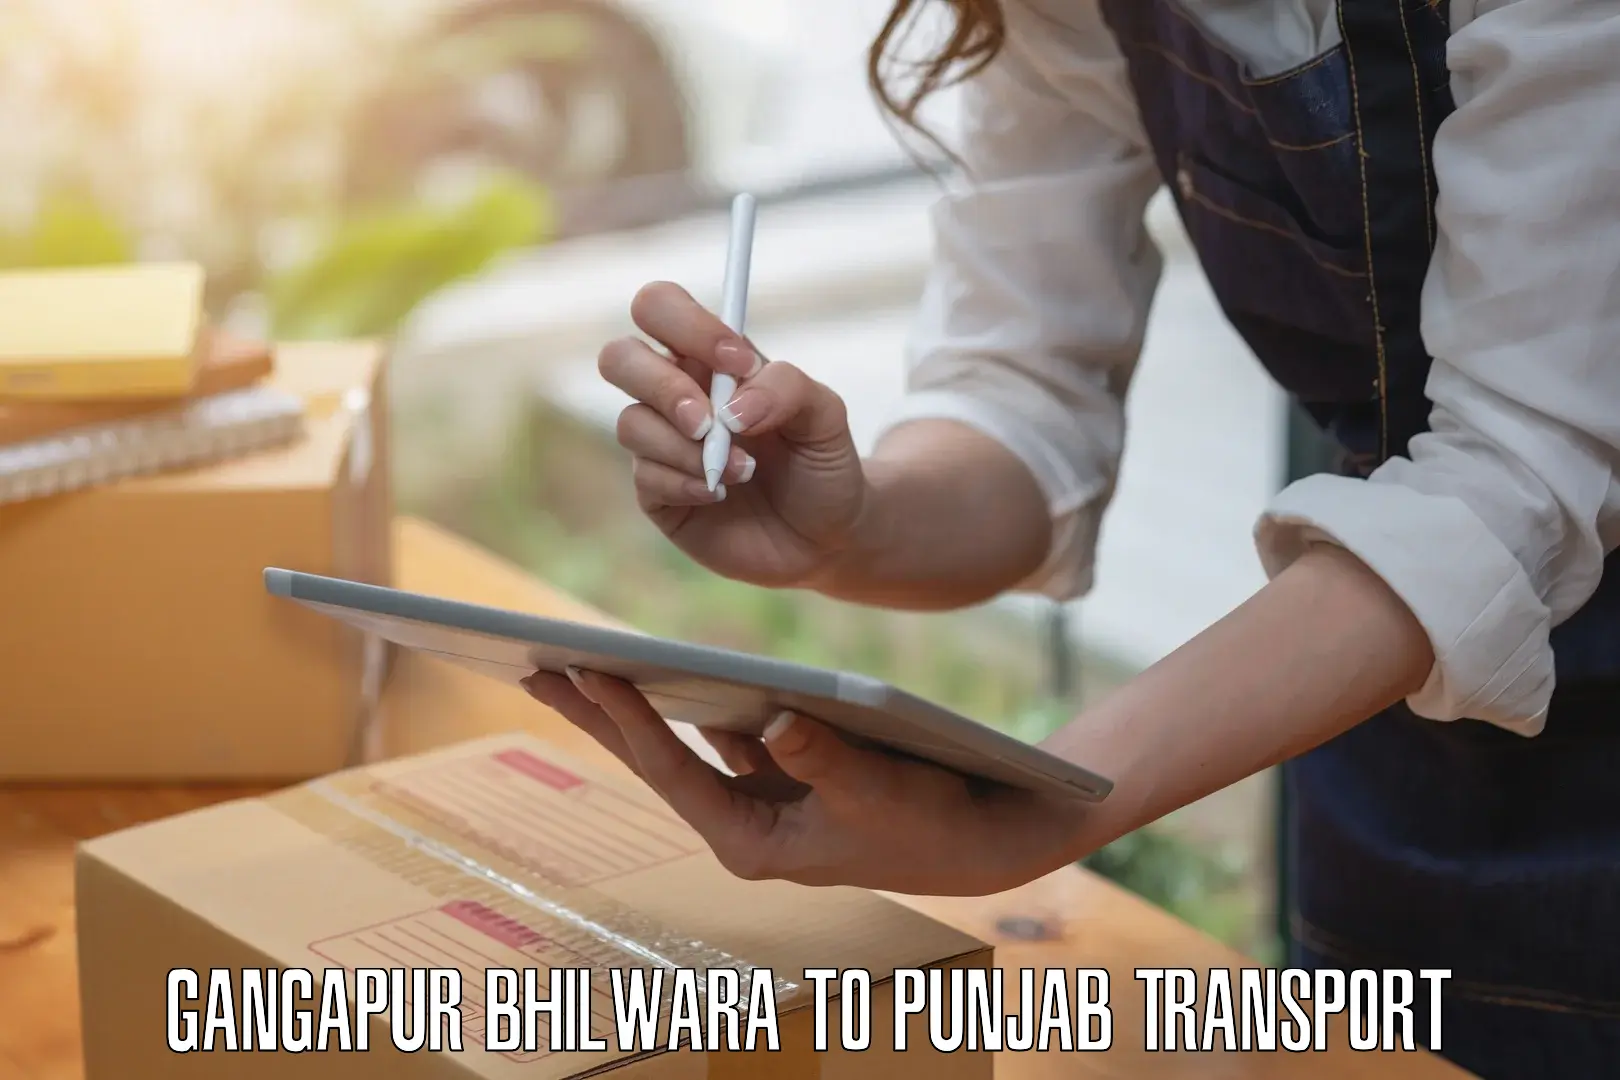 Transport in sharing Gangapur Bhilwara to Punjab